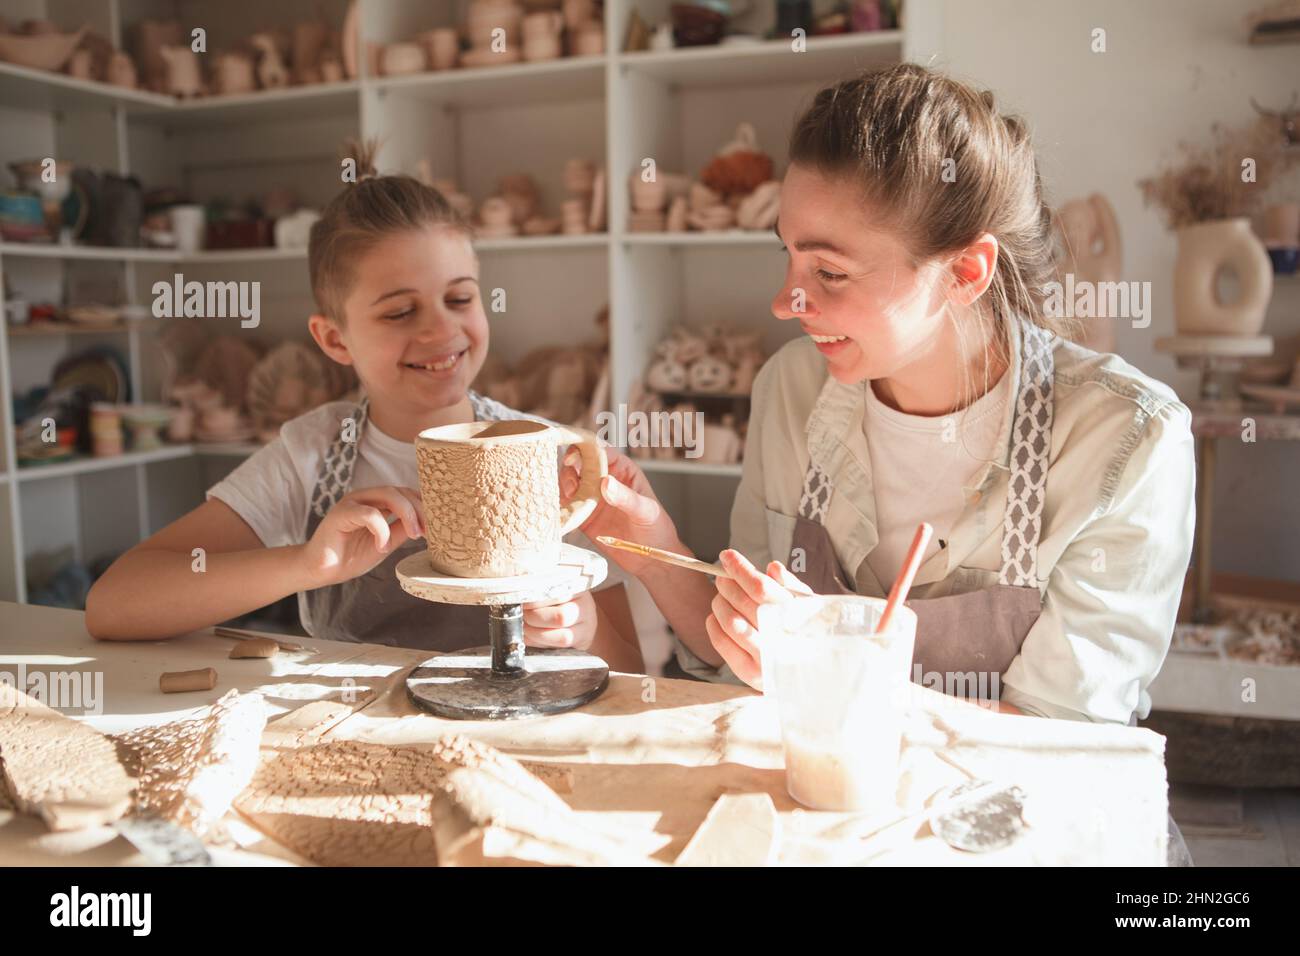 Kleiner Junge, der mit seiner Mutter lacht, während er gemeinsam im Töpferstudio Geschirr macht Stockfoto